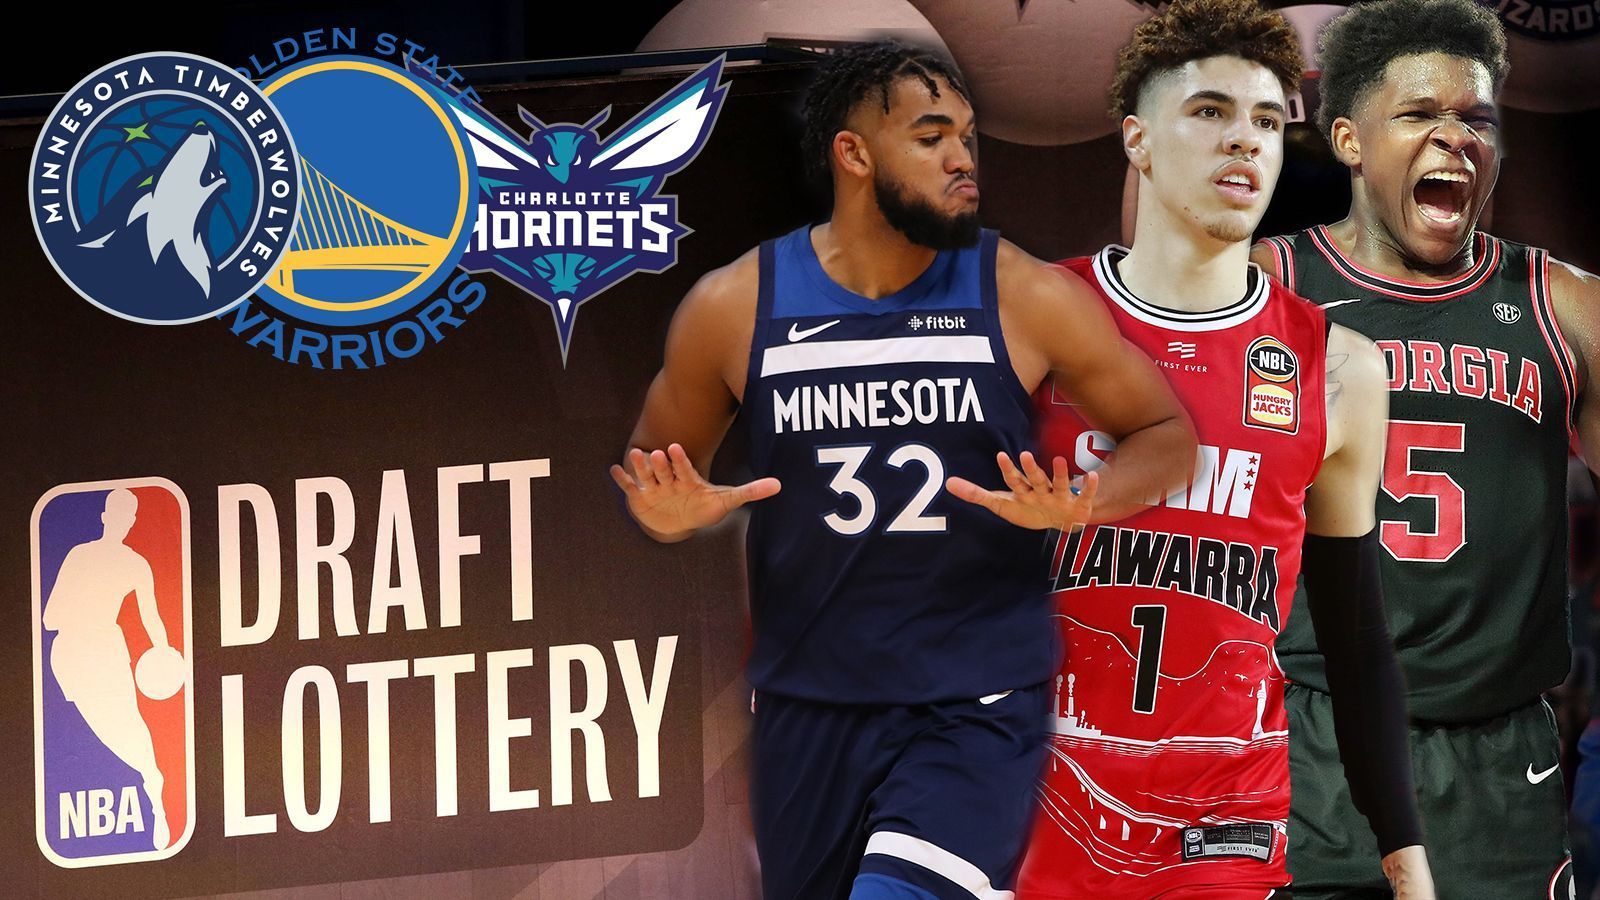 
                <strong>Wolves ziehen zuerst: Talente und Reihenfolge beim NBA Draft 2020</strong><br>
                Der NBA Draft 2020 steht. Die Minnesota Timberwolves gewannen die Lottery und bekommen den ersten Pick. ran.de zeigt die Top-Prospects - unter anderem mit einem BBL-Star - und die weitere Reihenfolge.
              